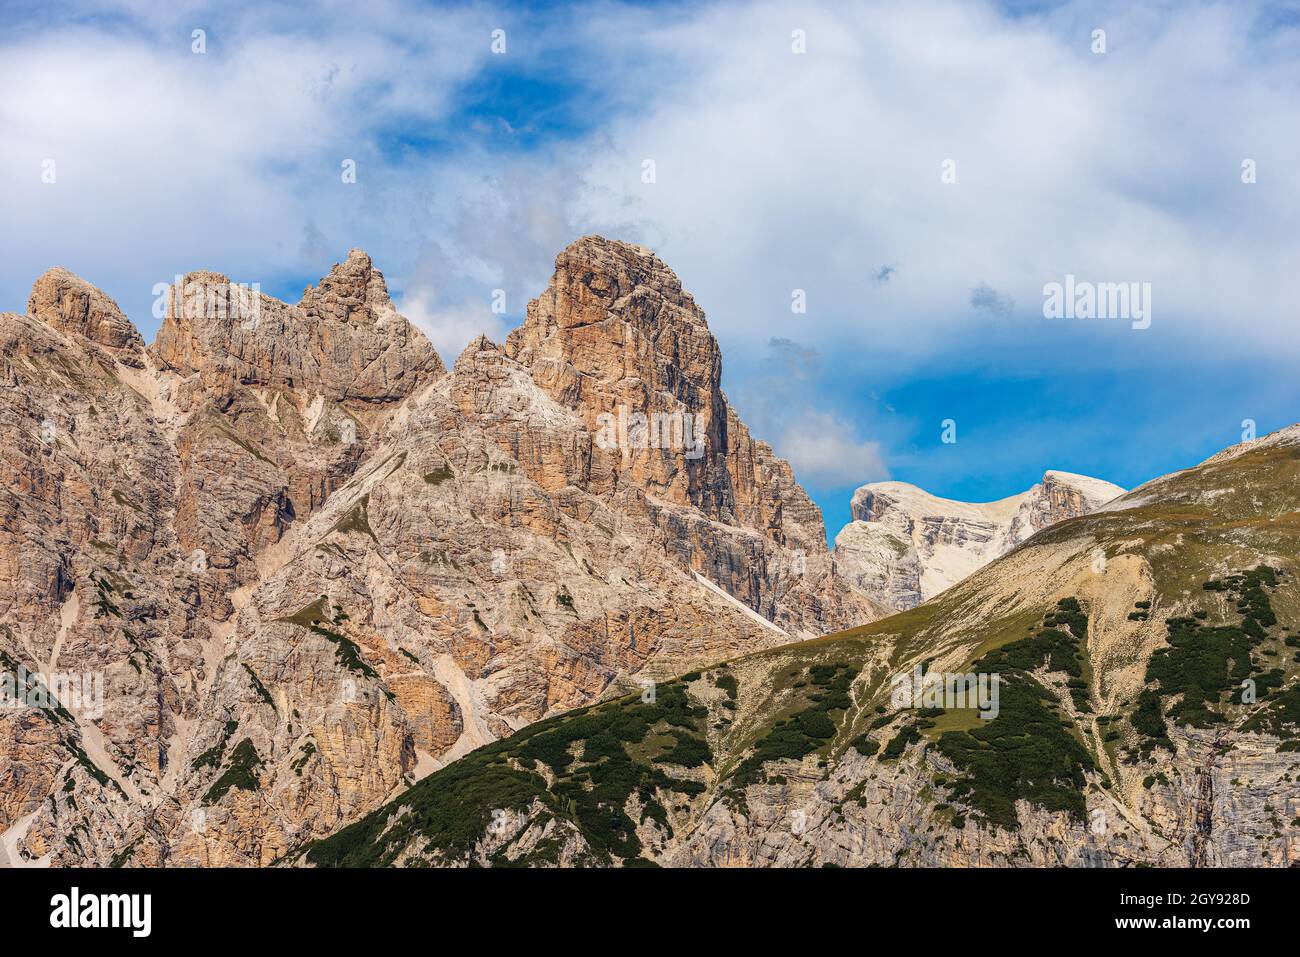 Mountain peaks of Sesto Dolomites near Tre Cime di Lavaredo, Monte Rudo or Rautkofel, Croda dei Rondoi or Schwalbenkofel and Cima Piatta Alta. Italy. Stock Photo